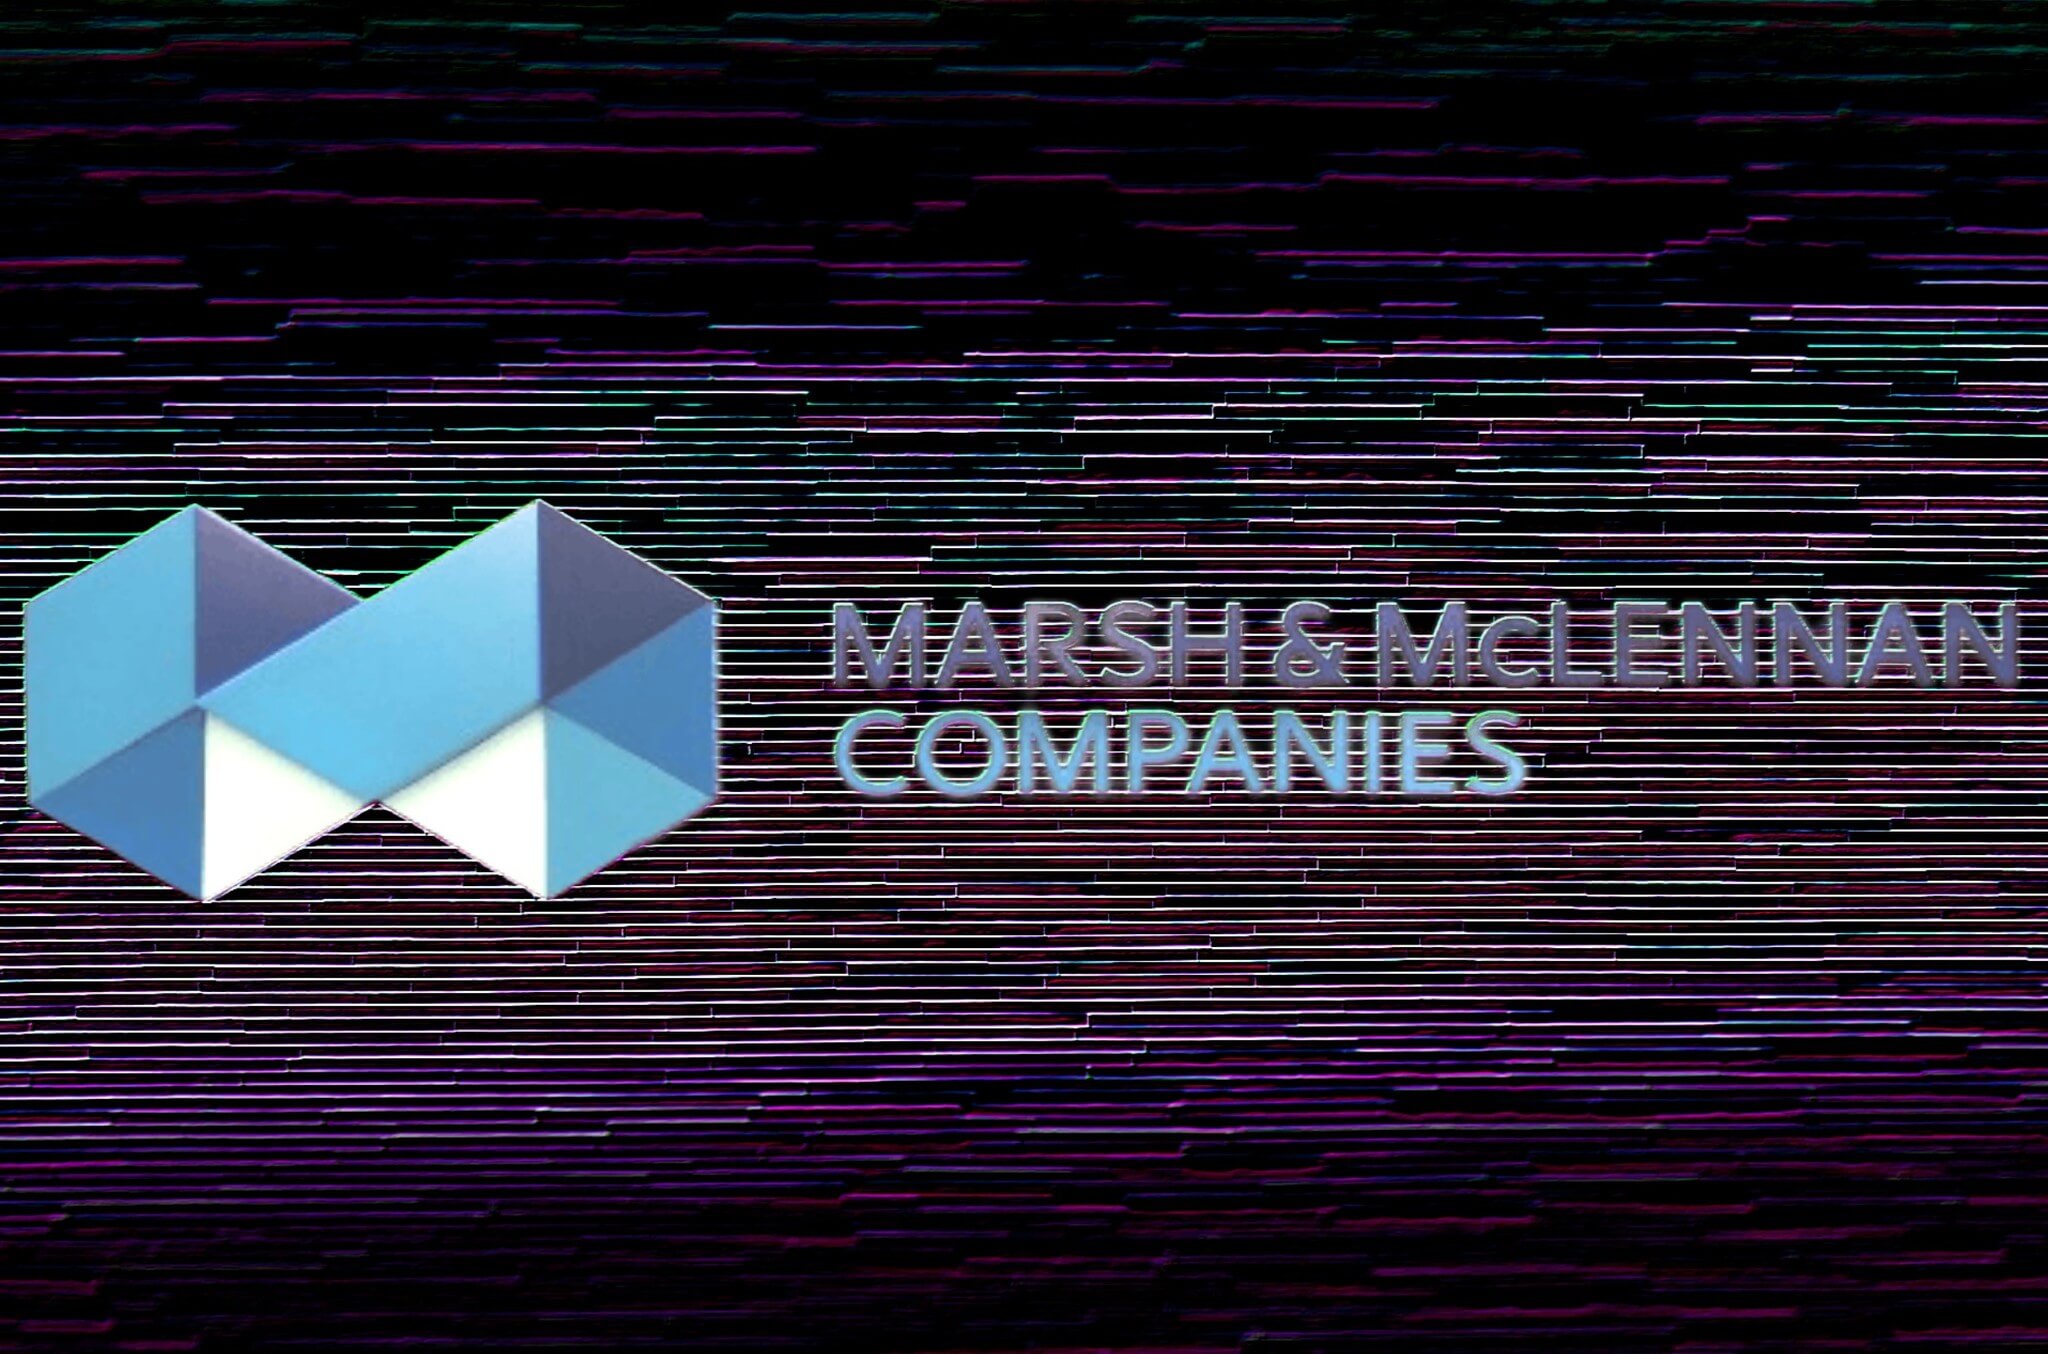 Marsh & McLennan NYSE:MMC Stock and Financials